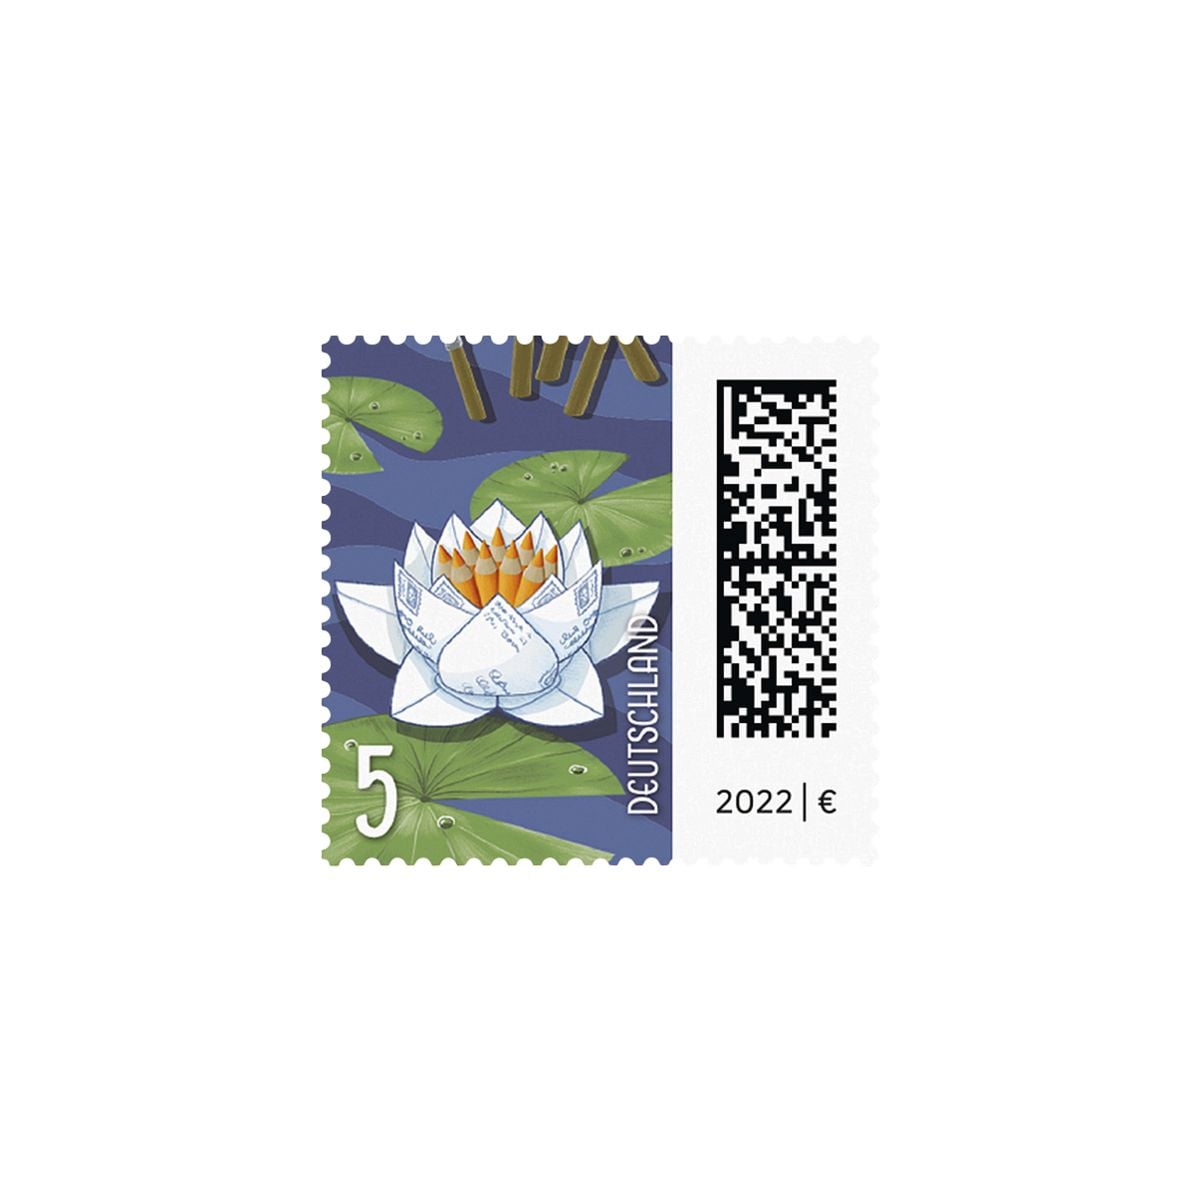 Porto ab 2022: 0,05 € Briefmarkenrolle Seebriefrose Deutsche Post, 200x Ergänzungsbriefmarke nassklebend